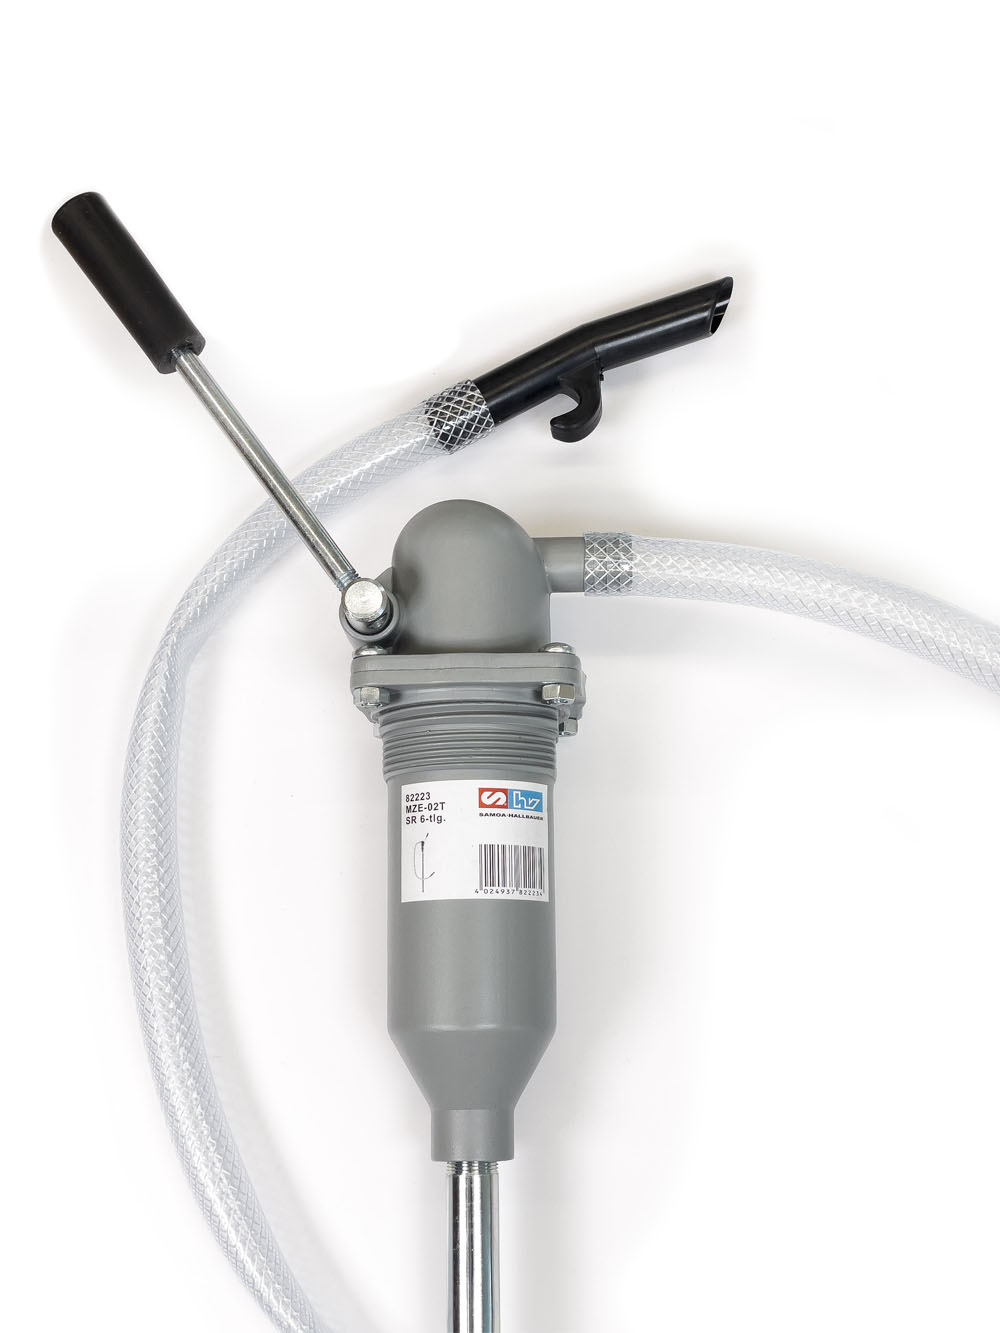 Luftpumpe Handpumpe Pumpe Saugpumpe für Flüssigkeiten Öl Benzin Diesel, Wartung & Pflege, Auto